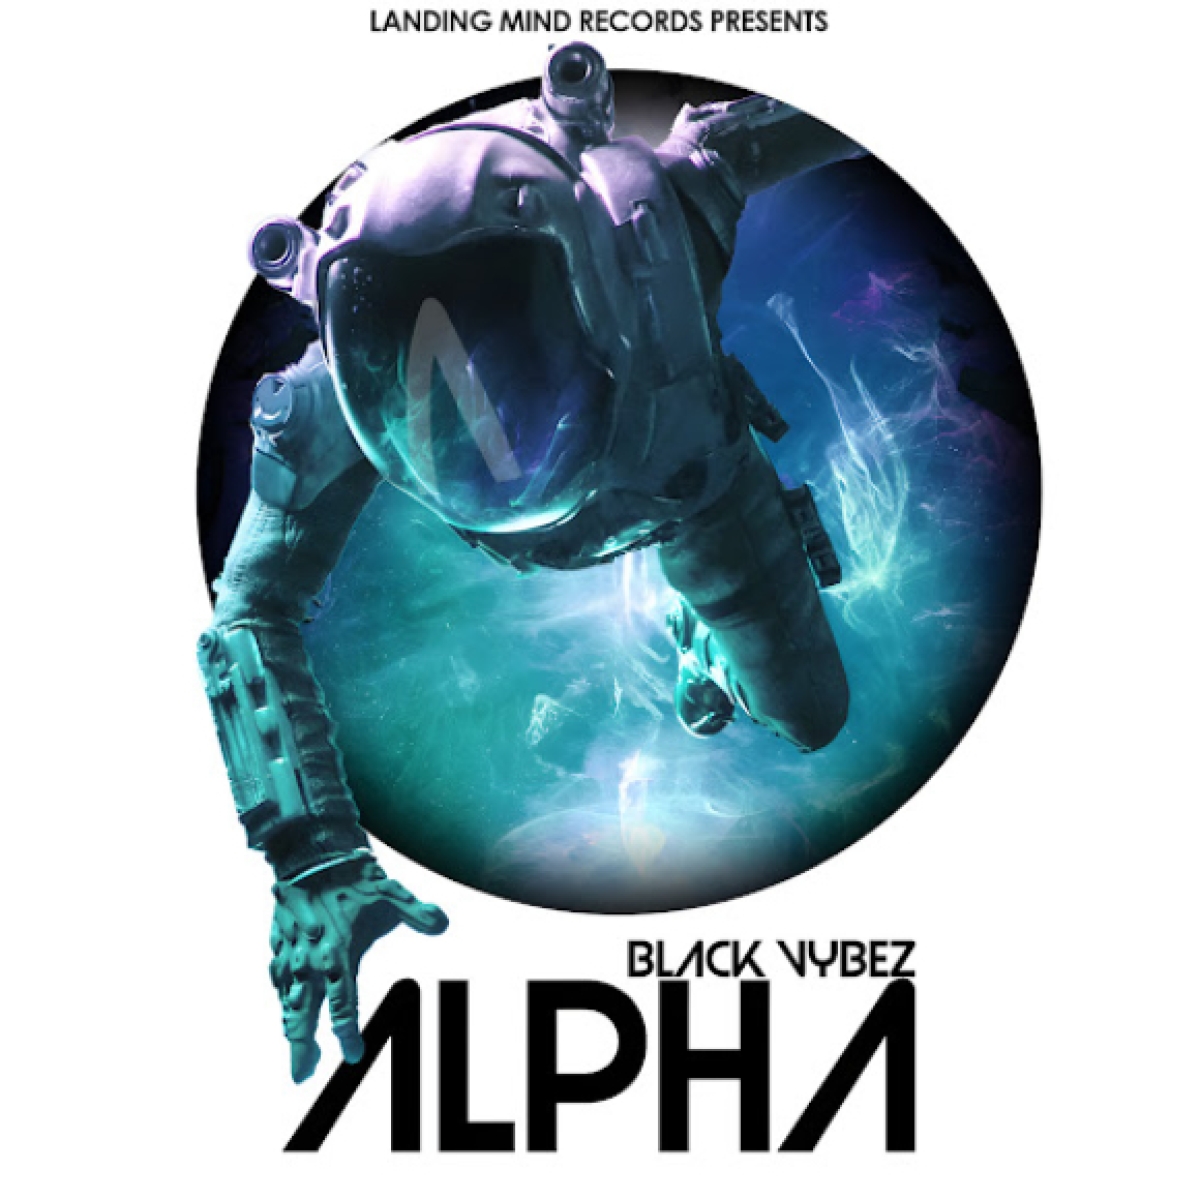 Το τραγούδι  &quot;Alpha&quot; του Black Vybez απο την Landing Mind Records